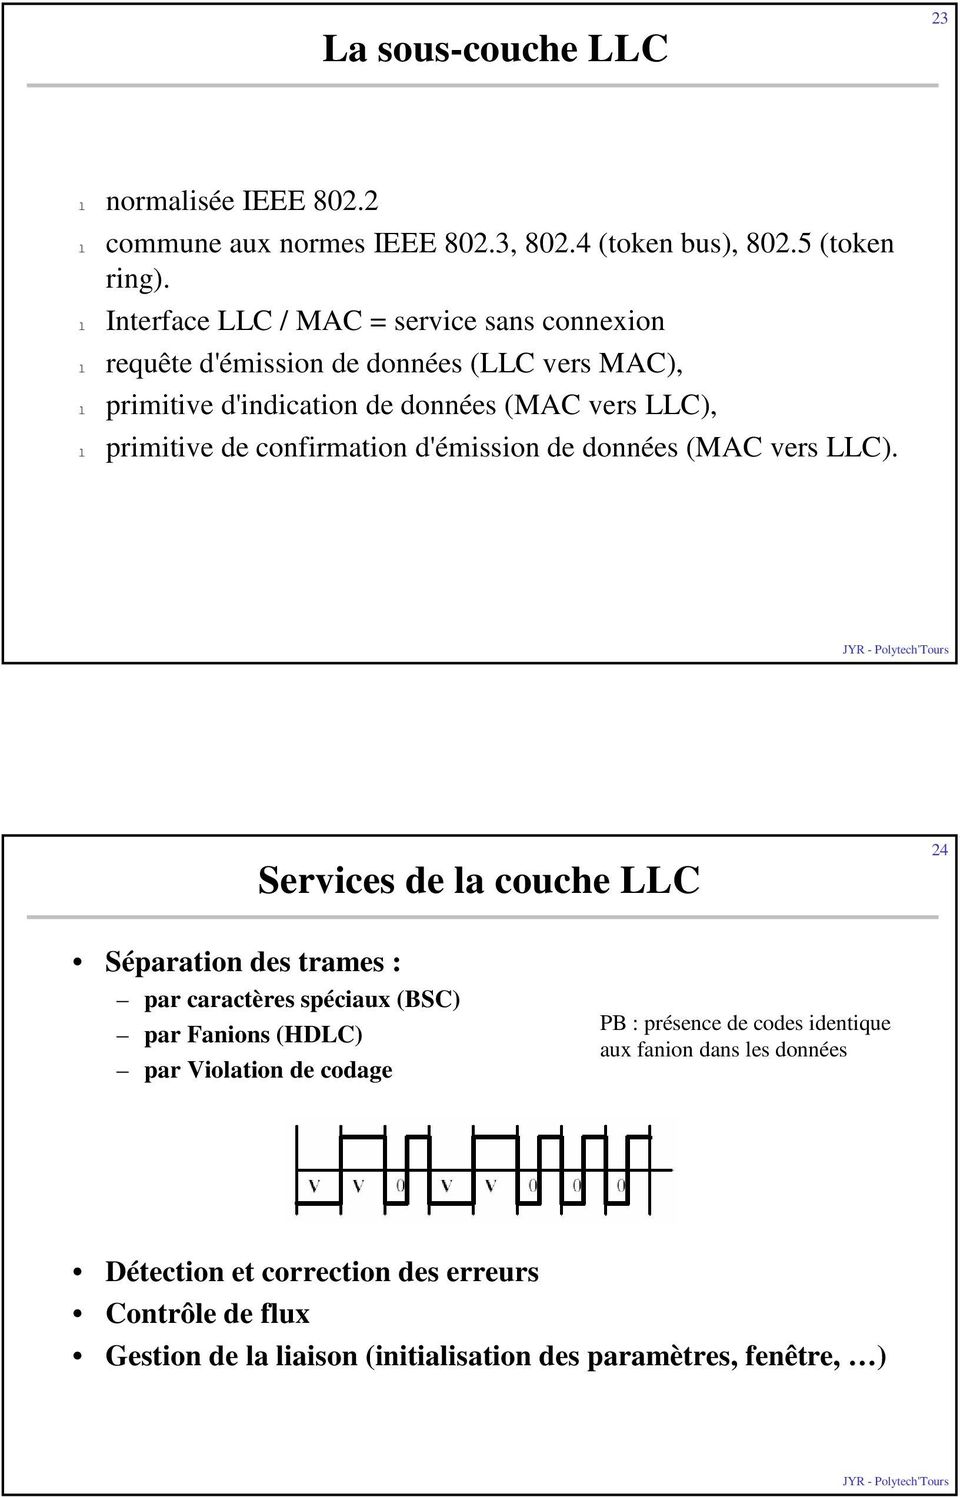 de confirmation d'émission de données (MAC vers LLC).